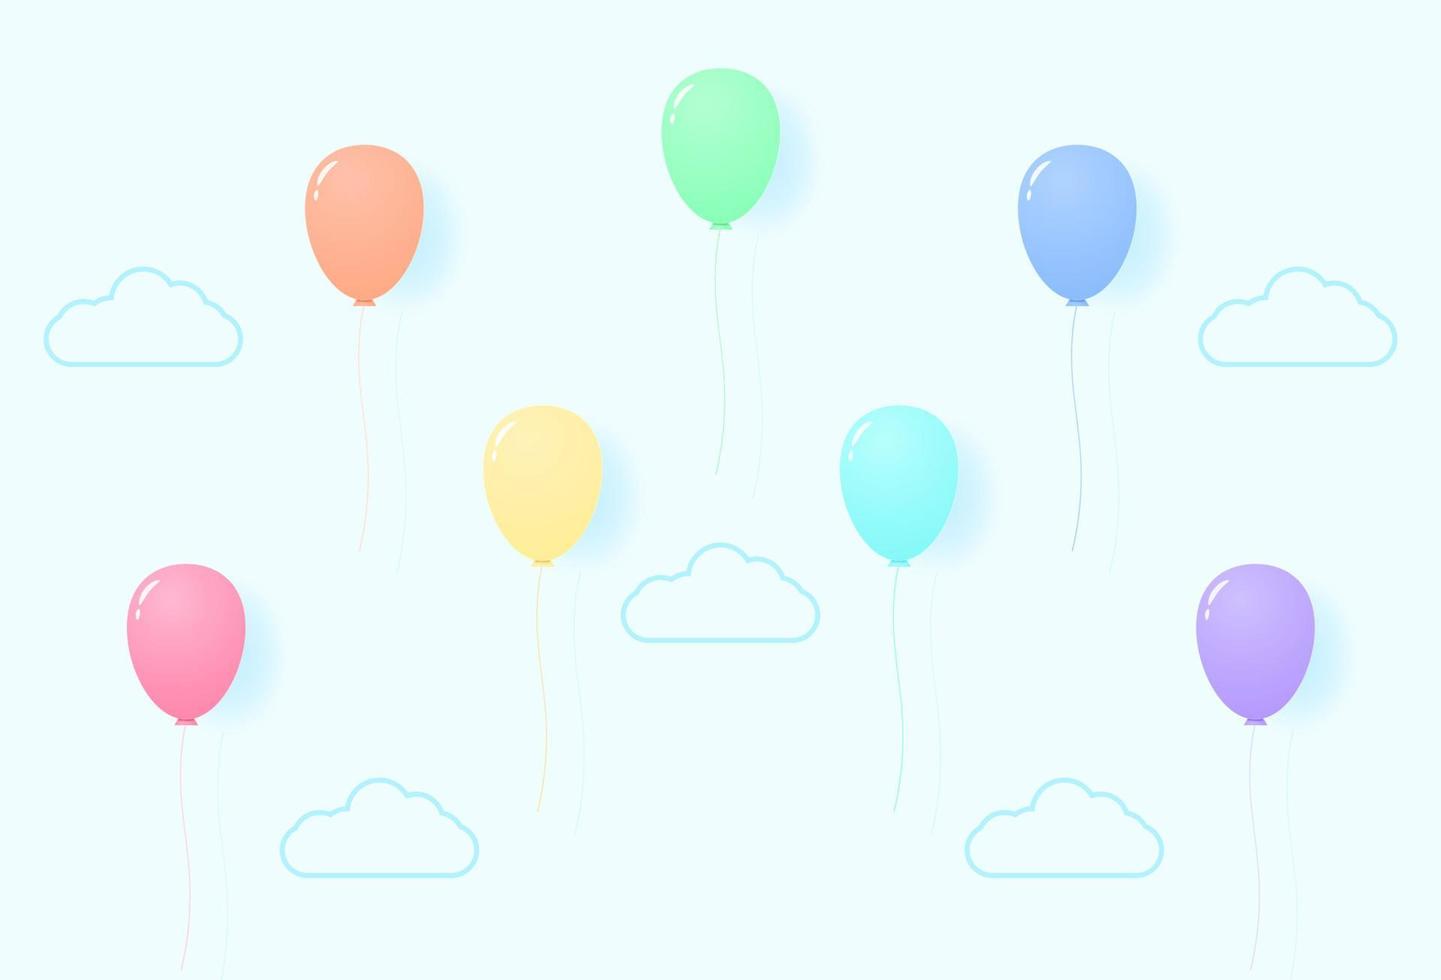 palloncini colorati in colori pastello che volano nel cielo, motivo color arcobaleno, stile cartaceo vettore